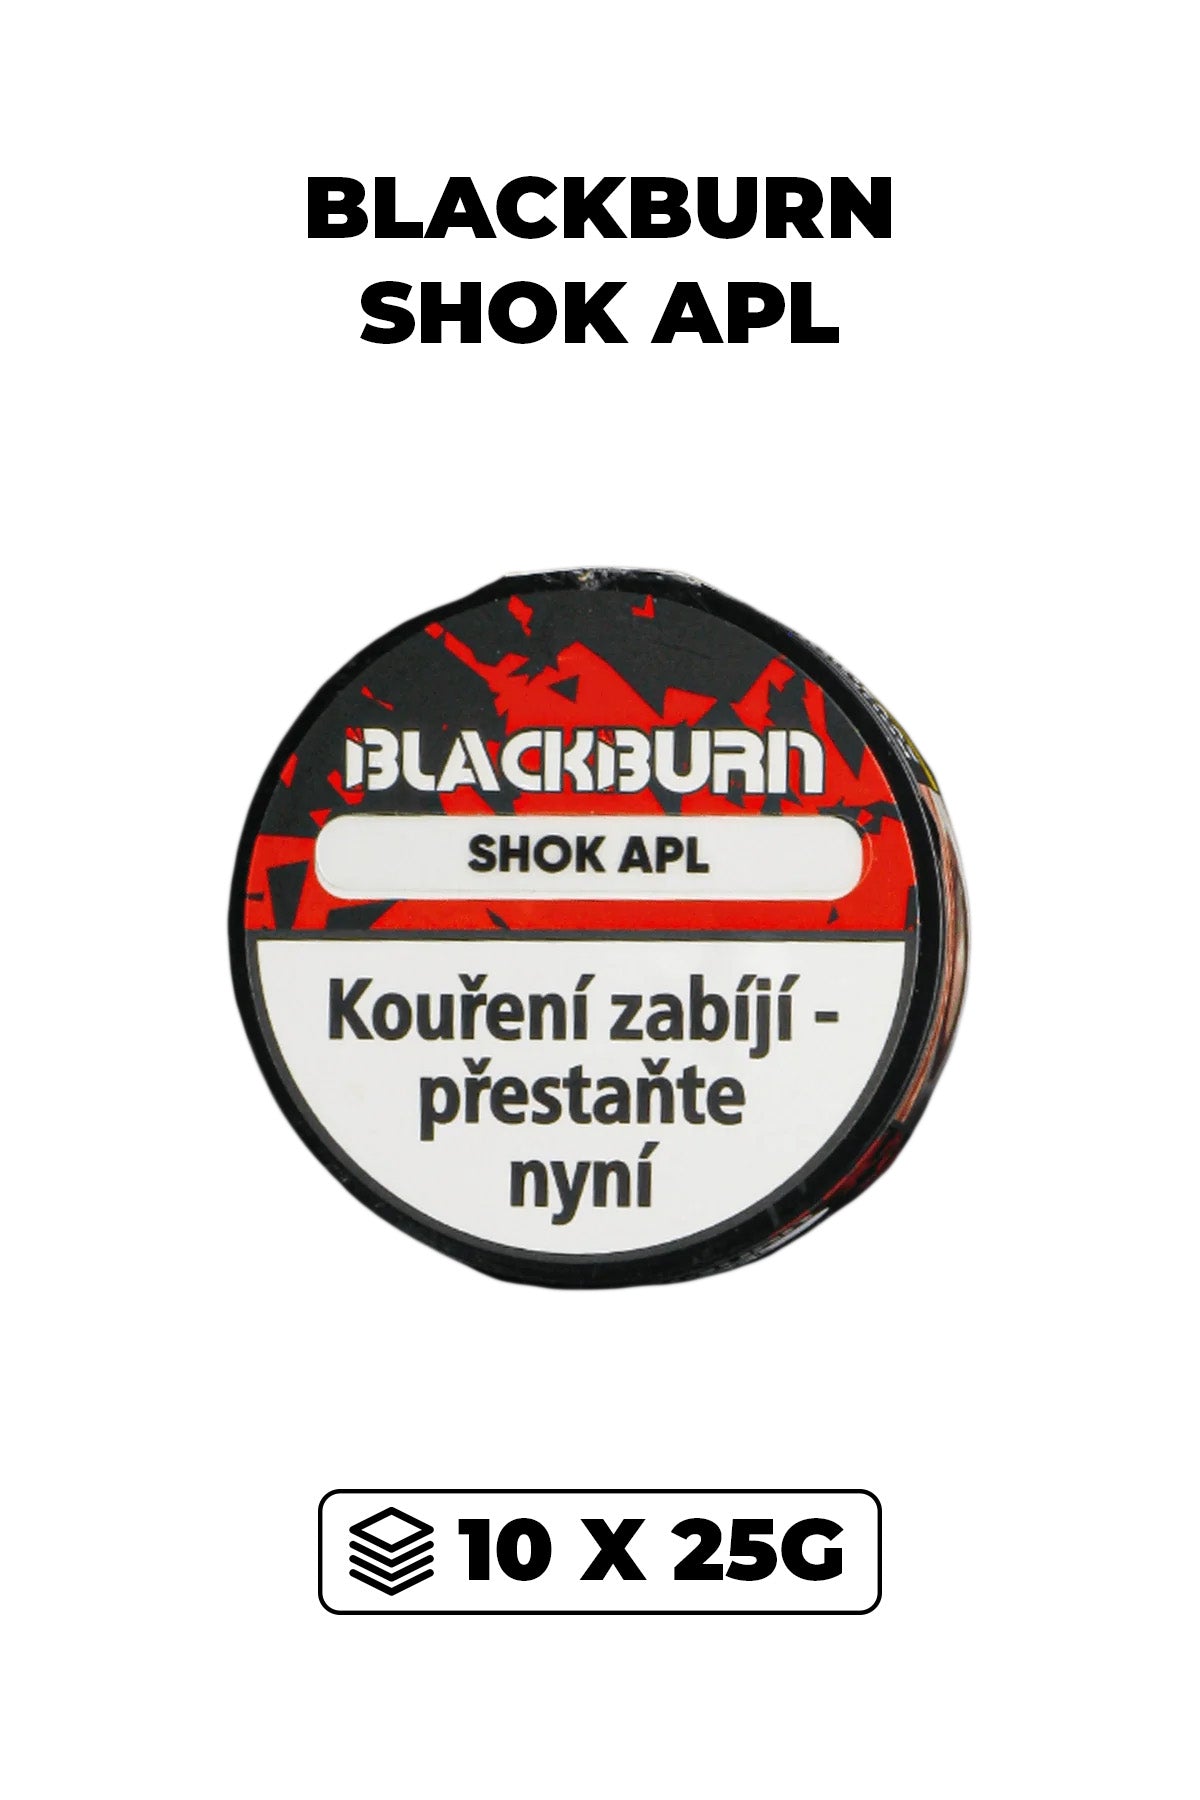 Tabák - BlackBurn 10x25g - Shok Apl